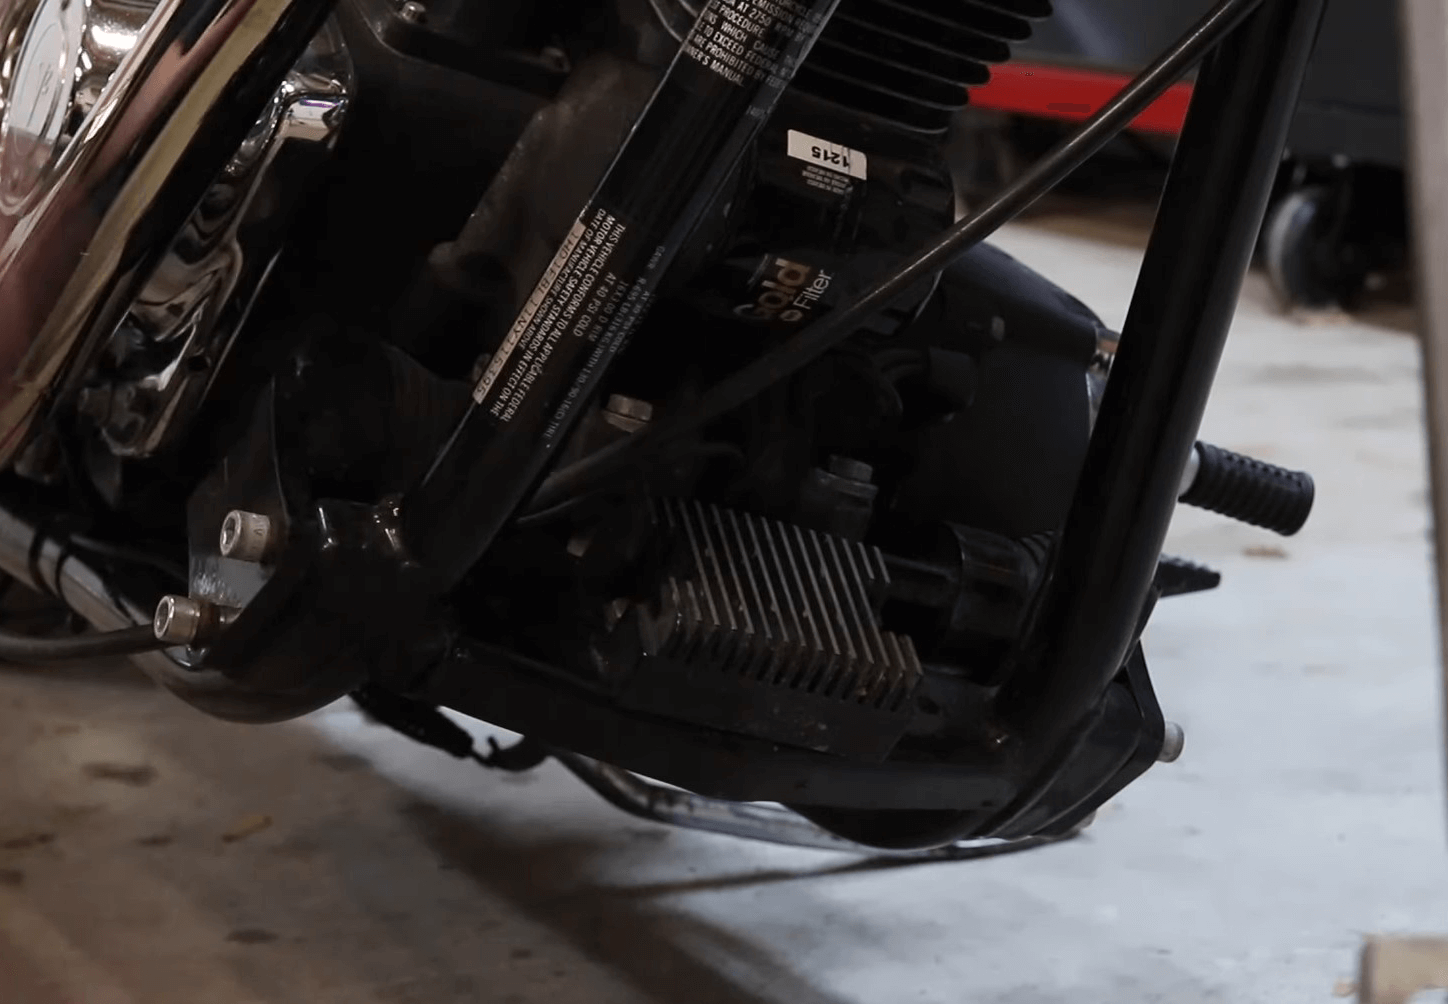 Basic Steps for Testing a Harley Davidson Voltage Regulator.